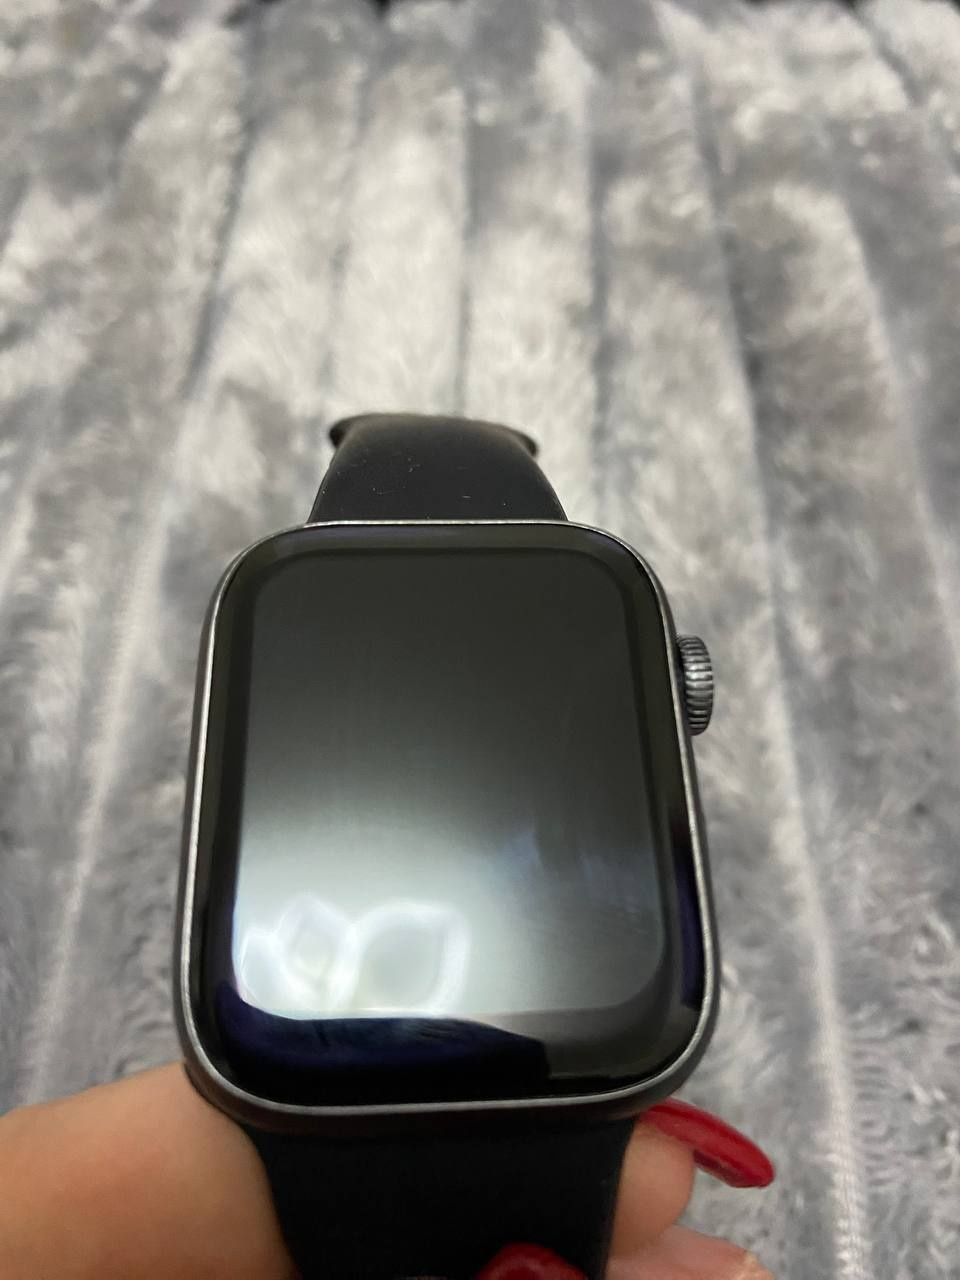 Смарт-часы Apple